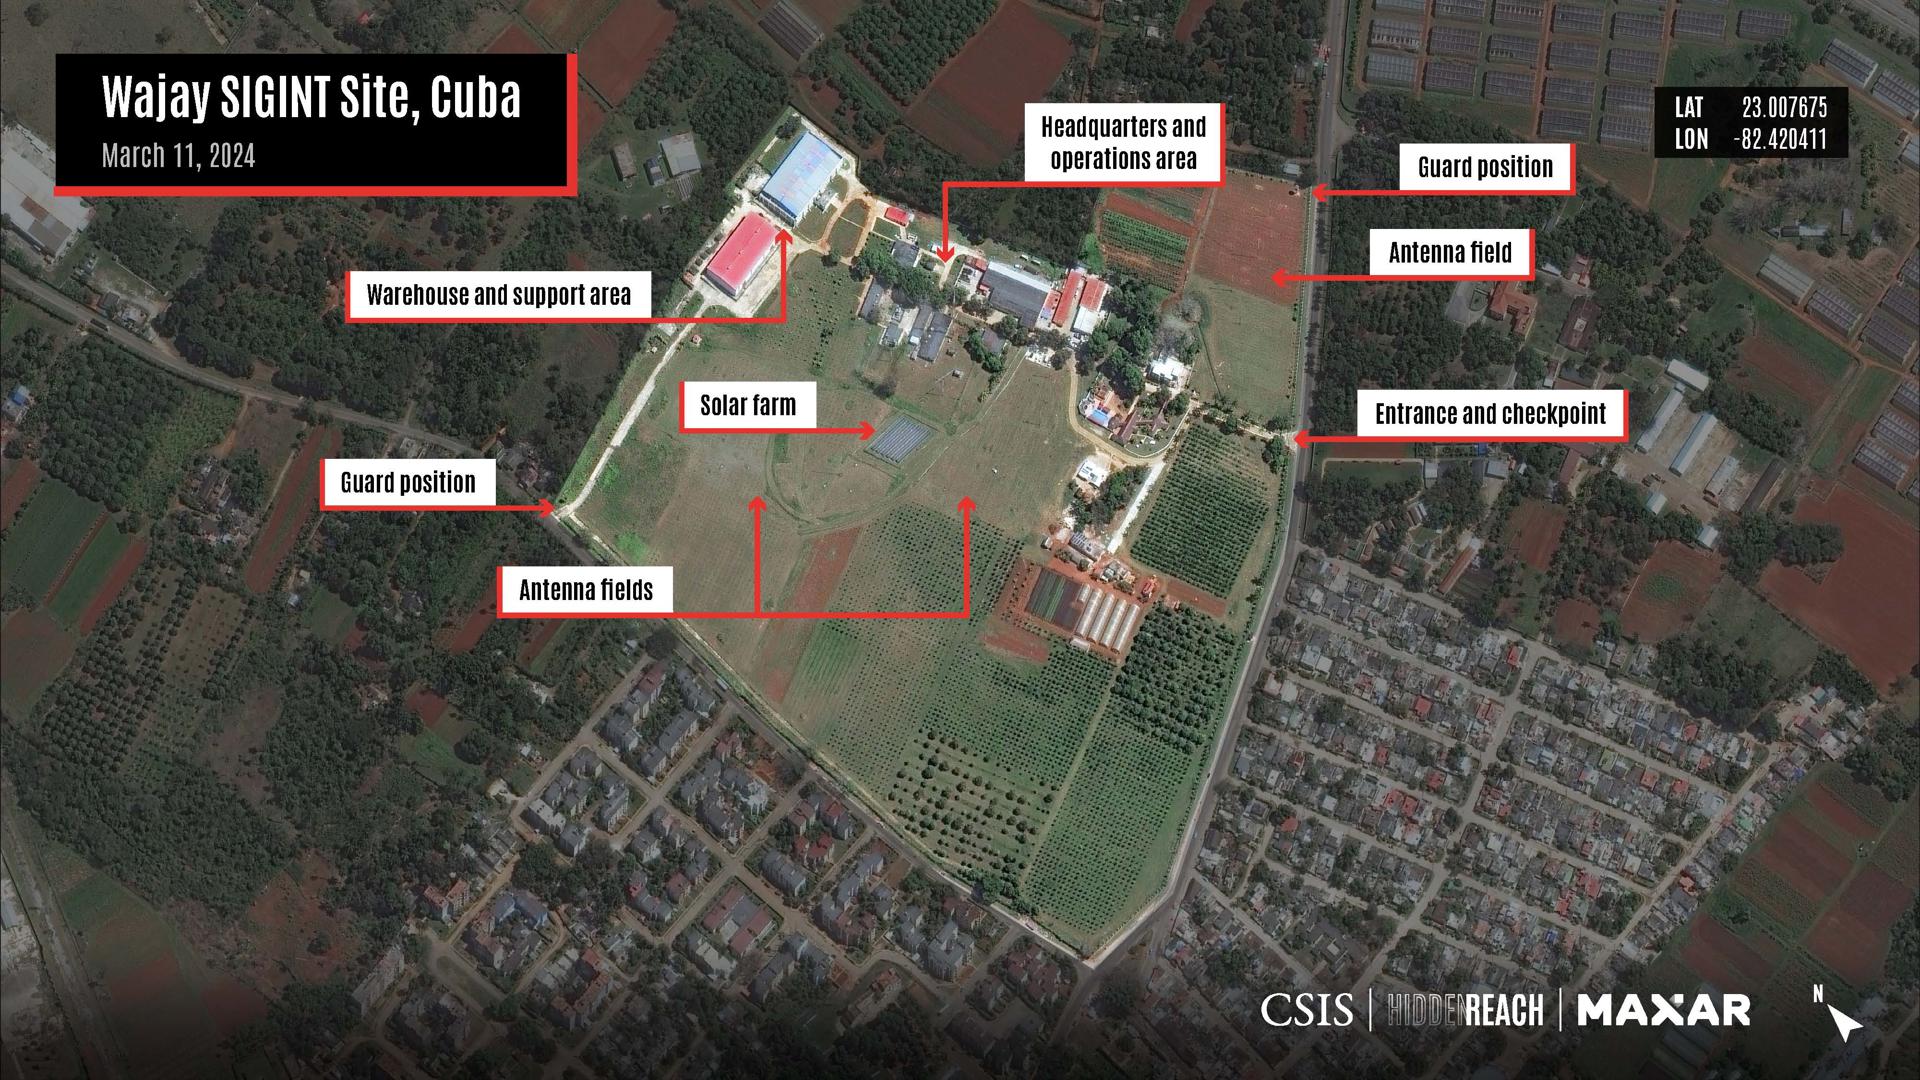 Imágenes de satélite muestran supuestas nuevas bases de espionaje chinas en Cuba